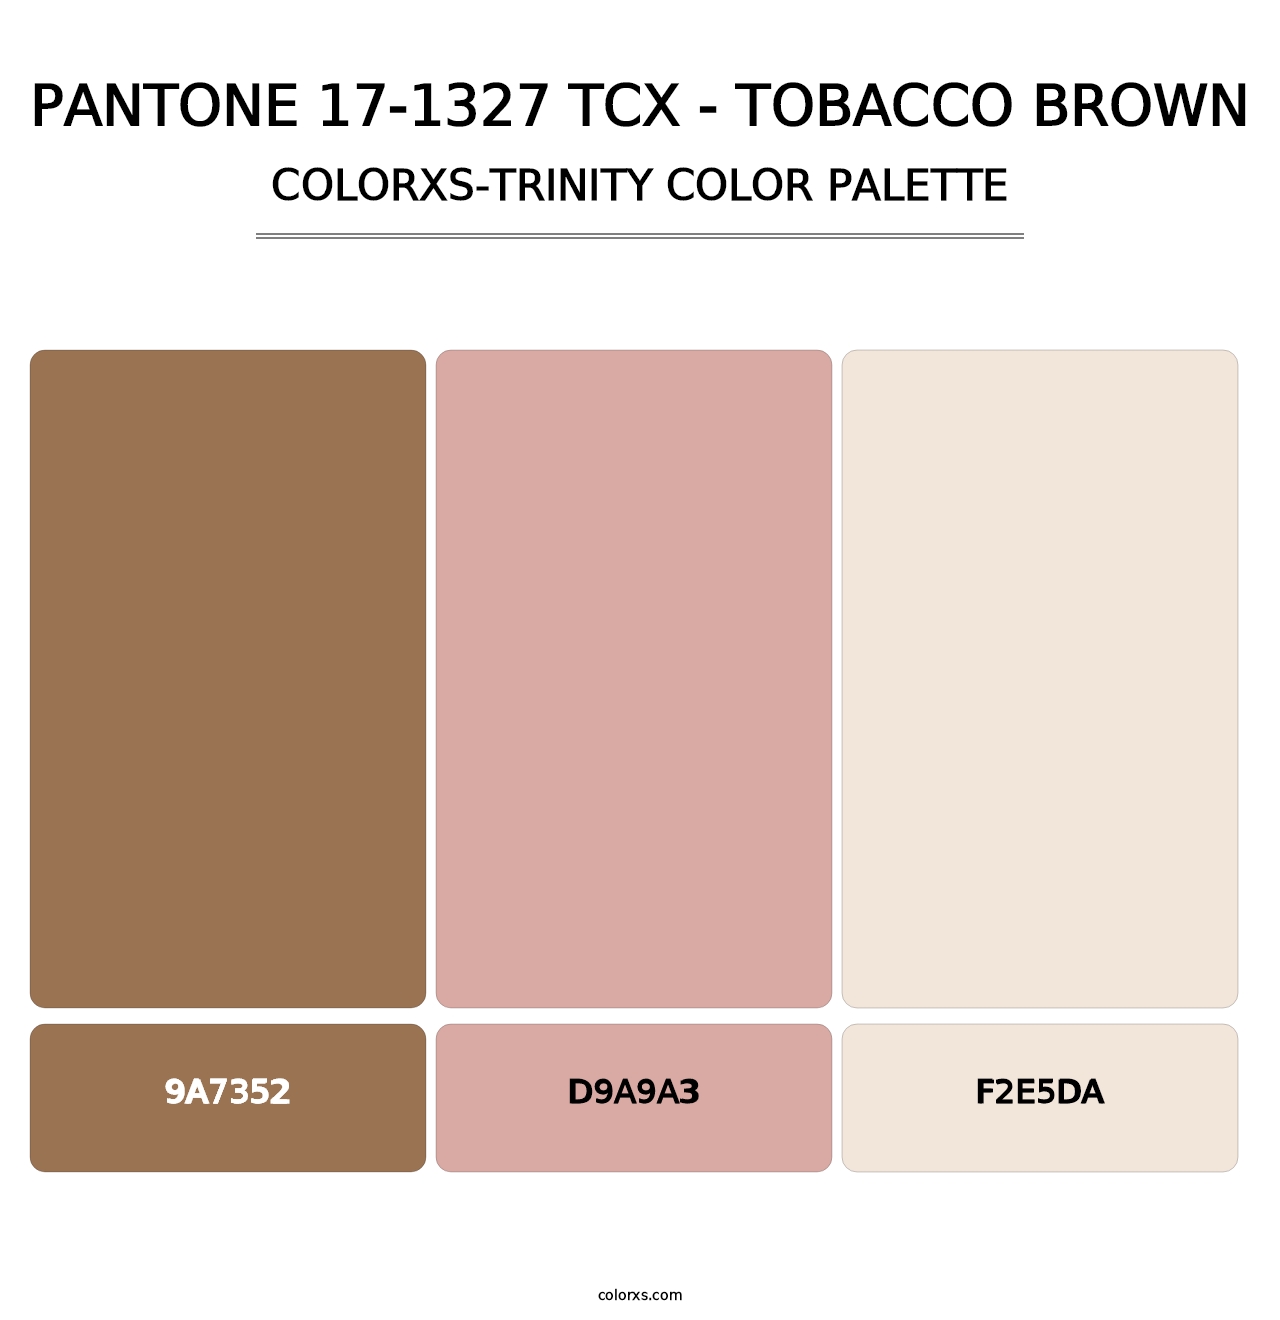 PANTONE 17-1327 TCX - Tobacco Brown - Colorxs Trinity Palette